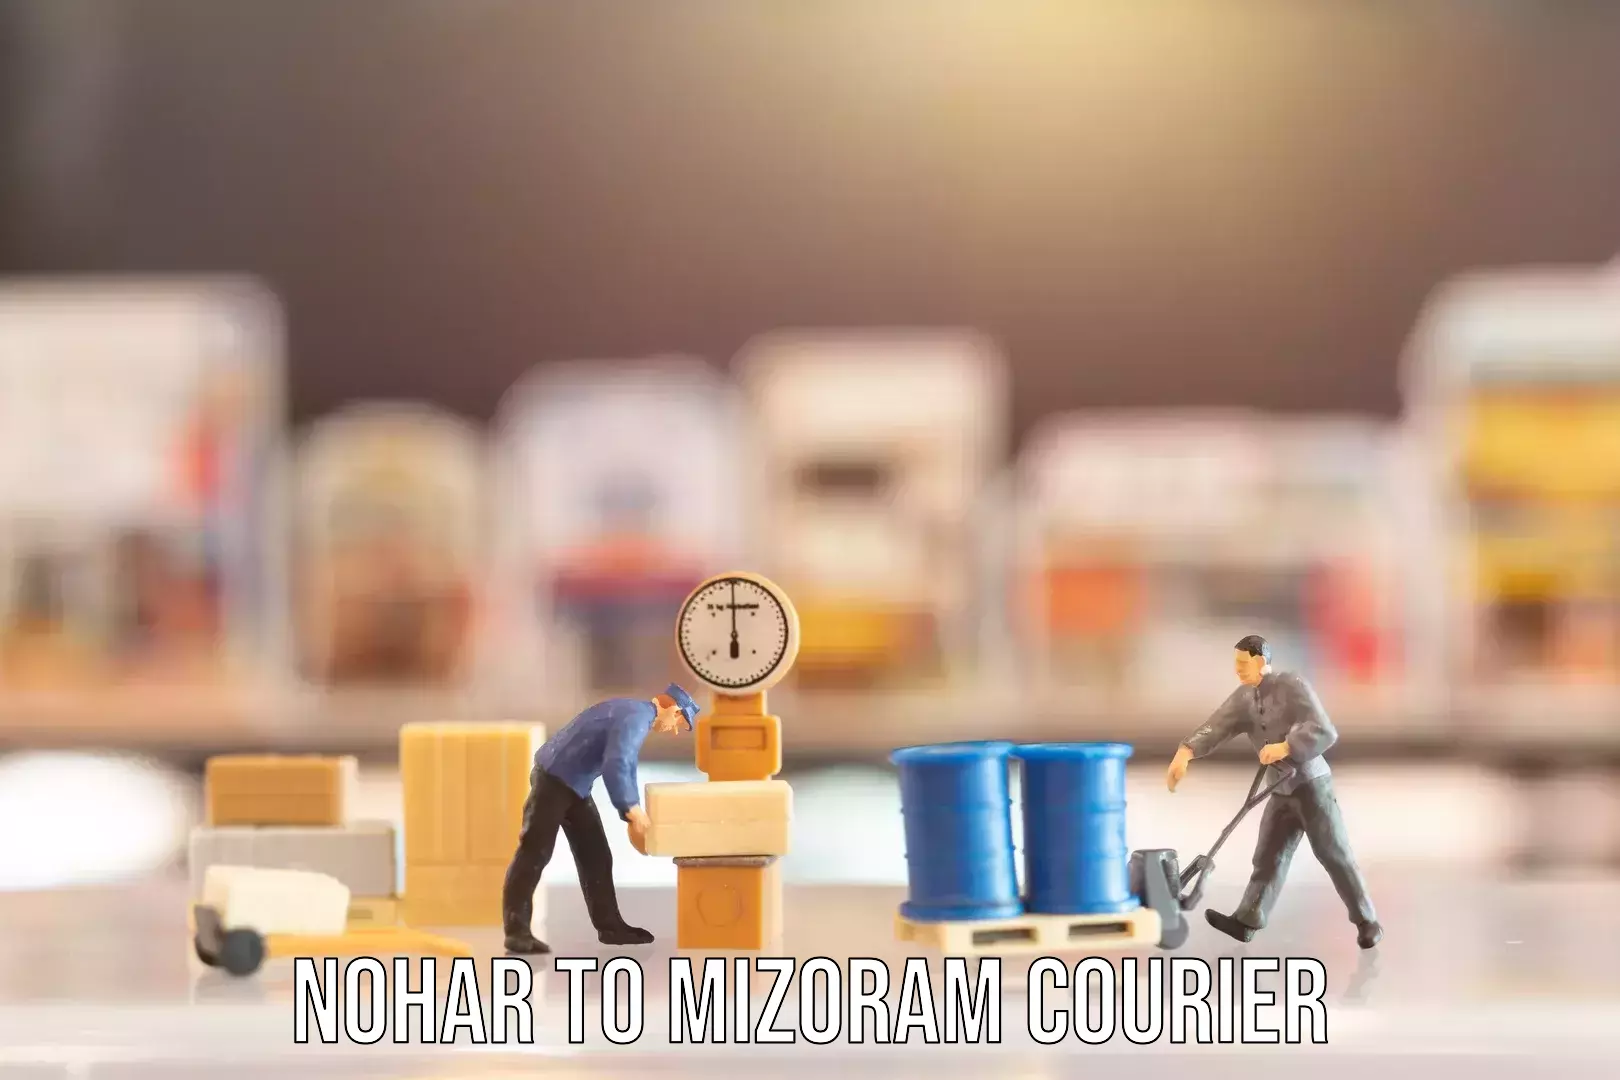 Luggage shipment specialists Nohar to Mizoram